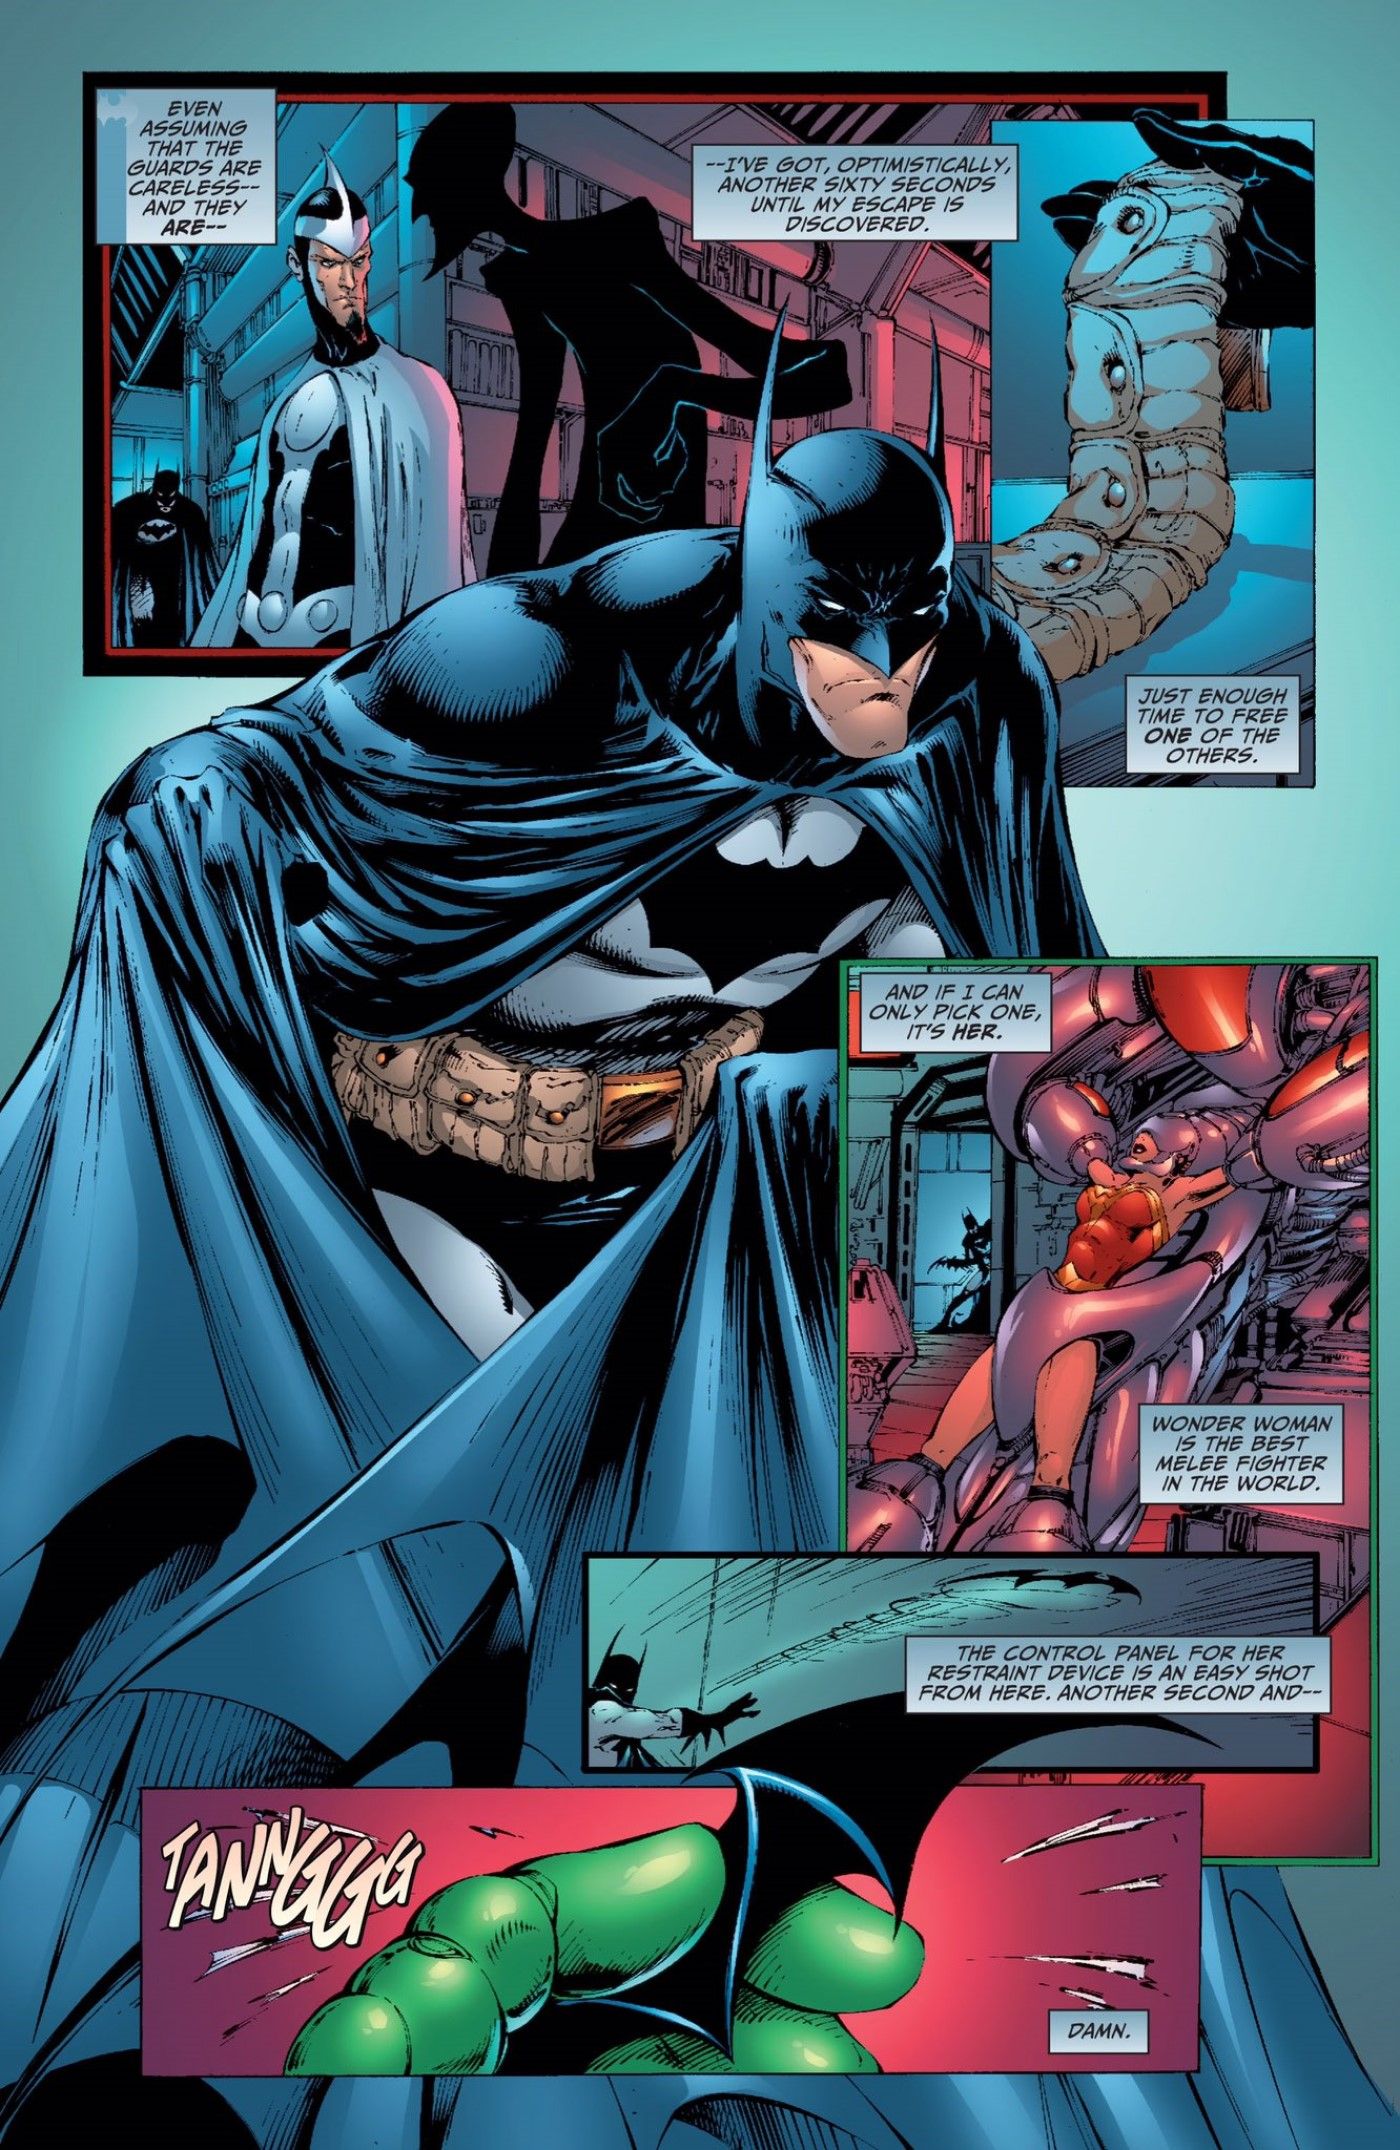 Batman considers Wonder Woman to be DC's best fighter in JLA #13.